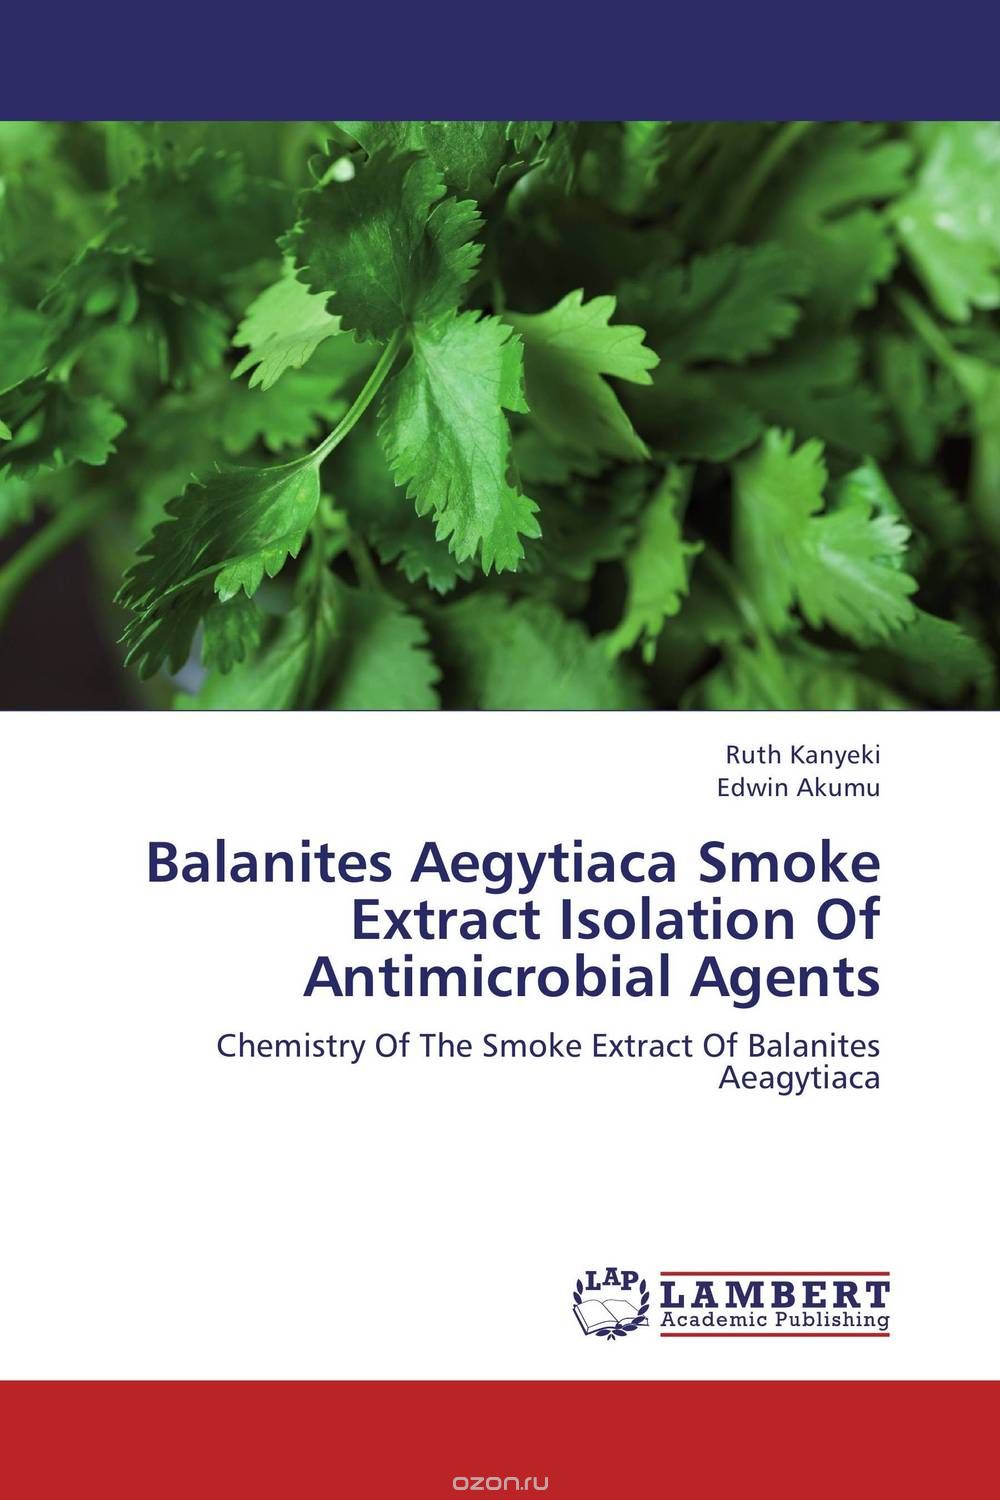 Скачать книгу "Balanites Aegytiaca Smoke Extract Isolation Of Antimicrobial Agents"